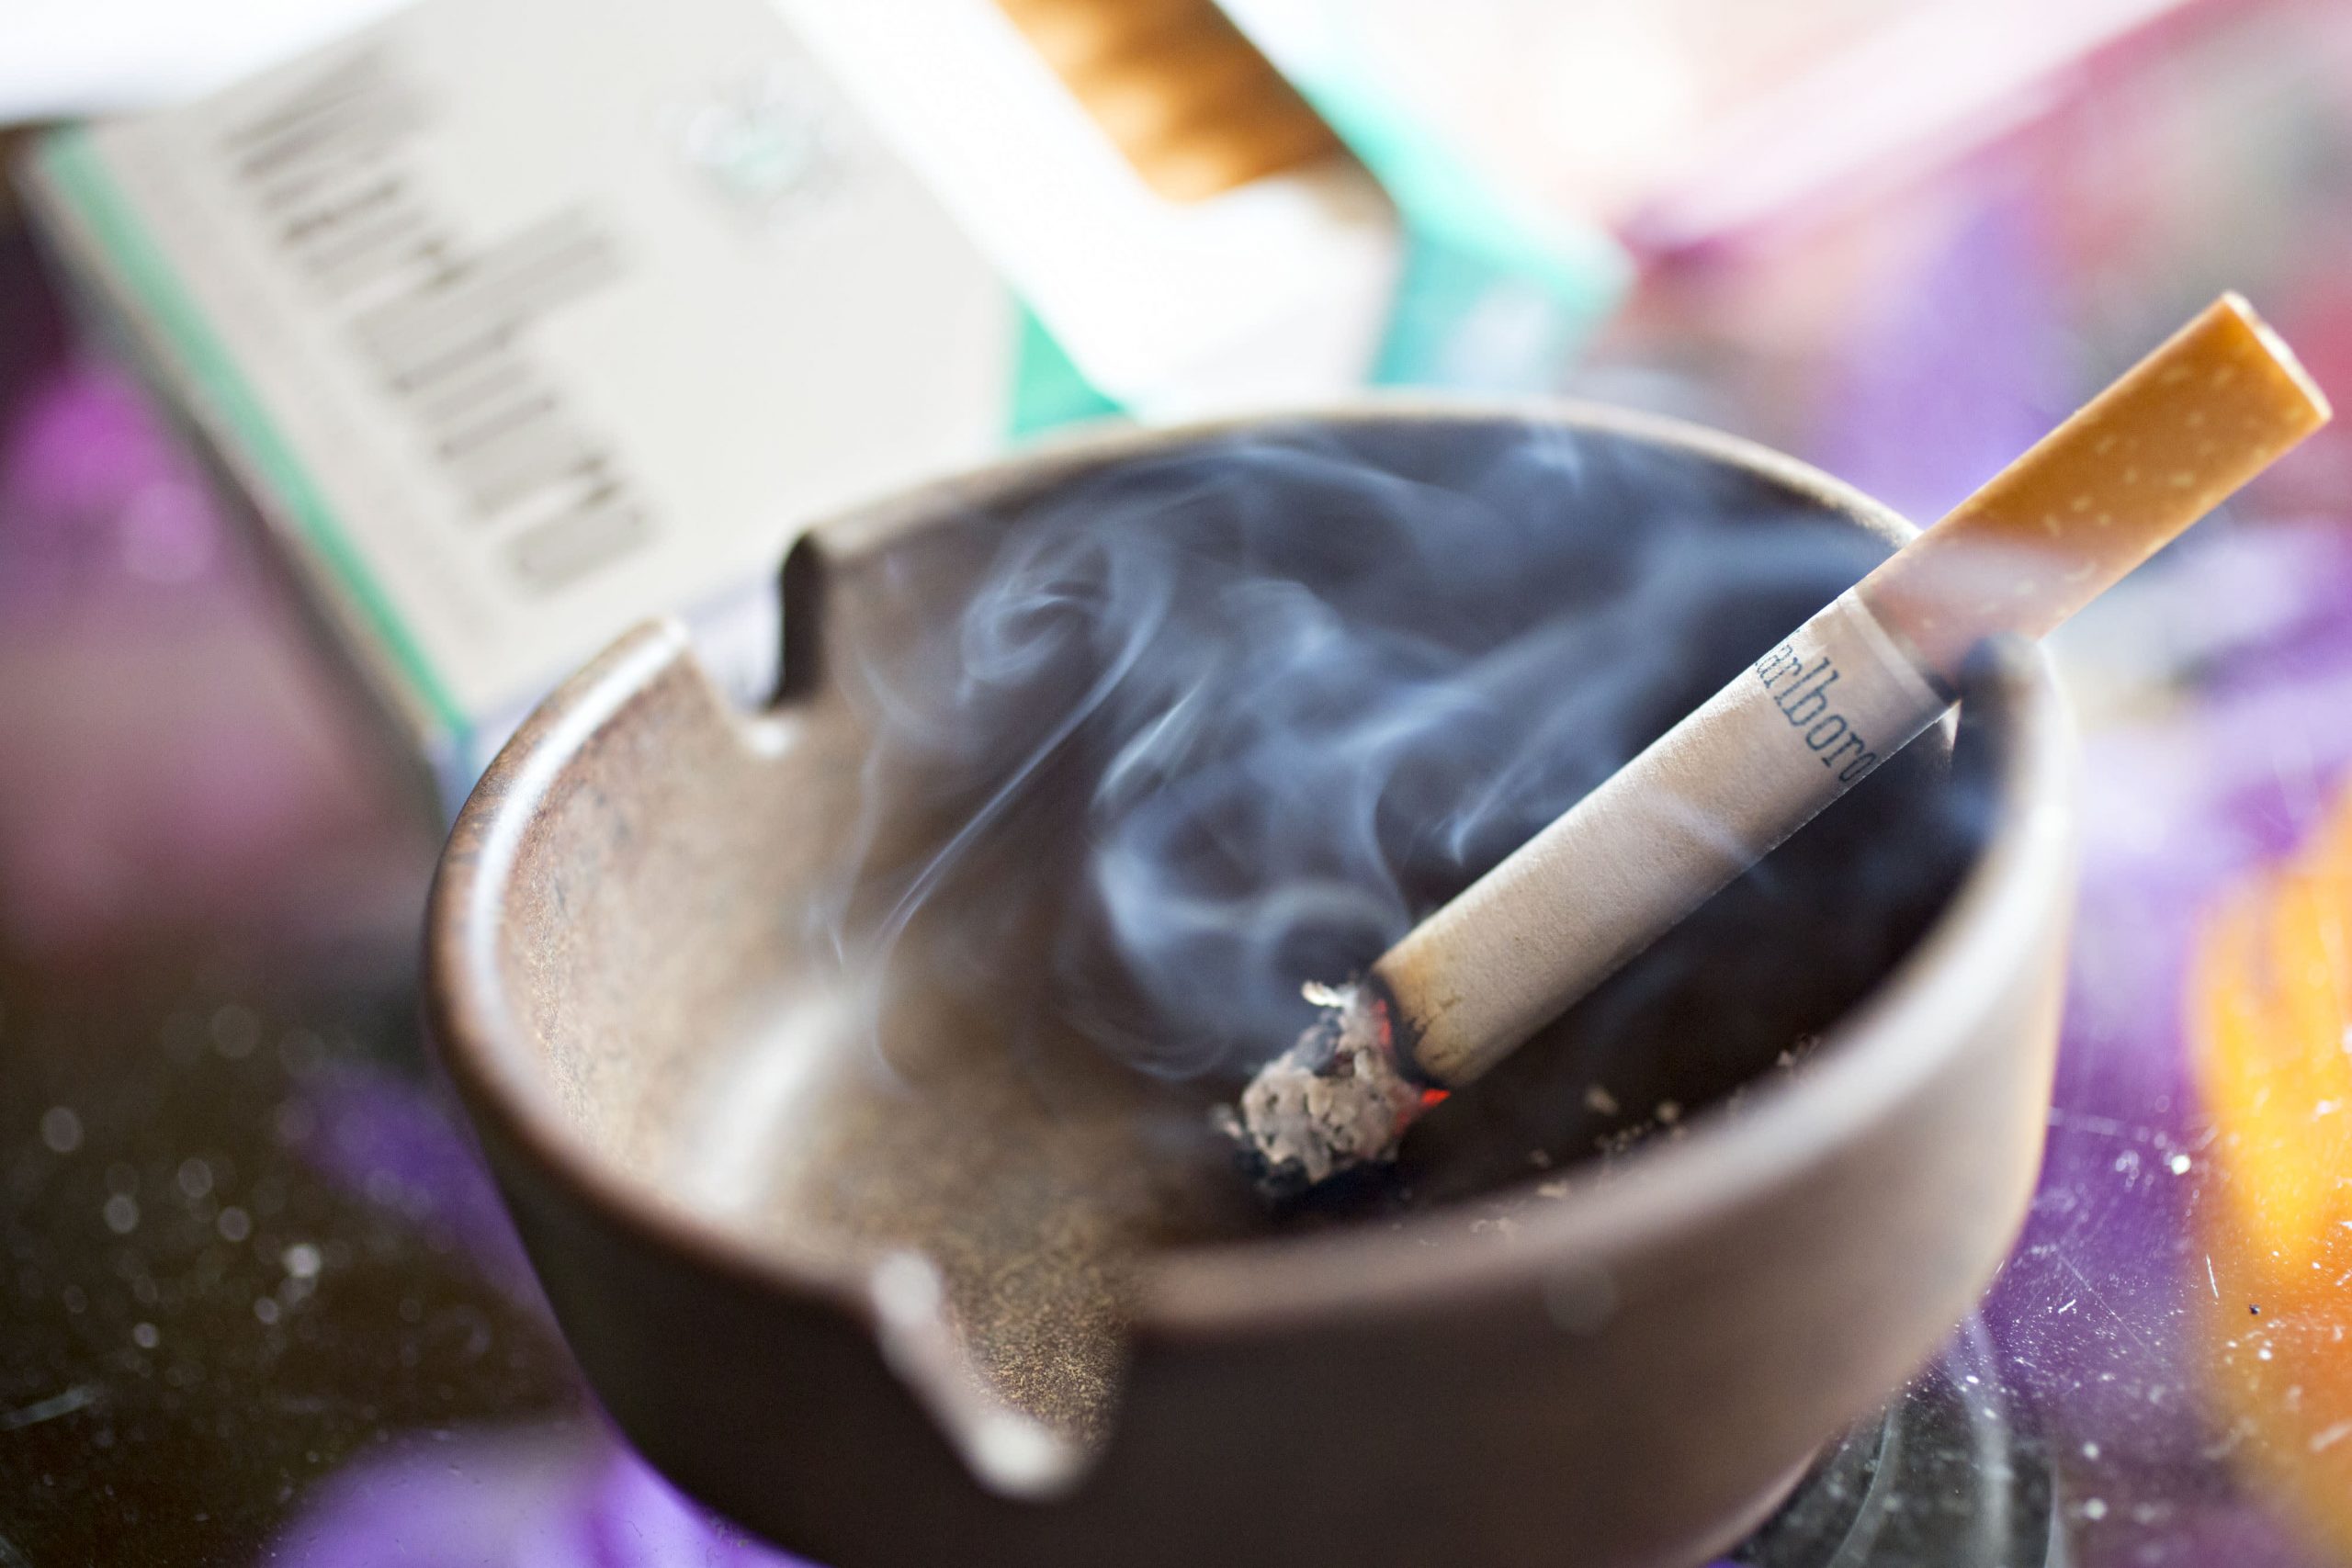 La FDA pospone el plan para reducir los niveles de nicotina en los cigarrillos habituales